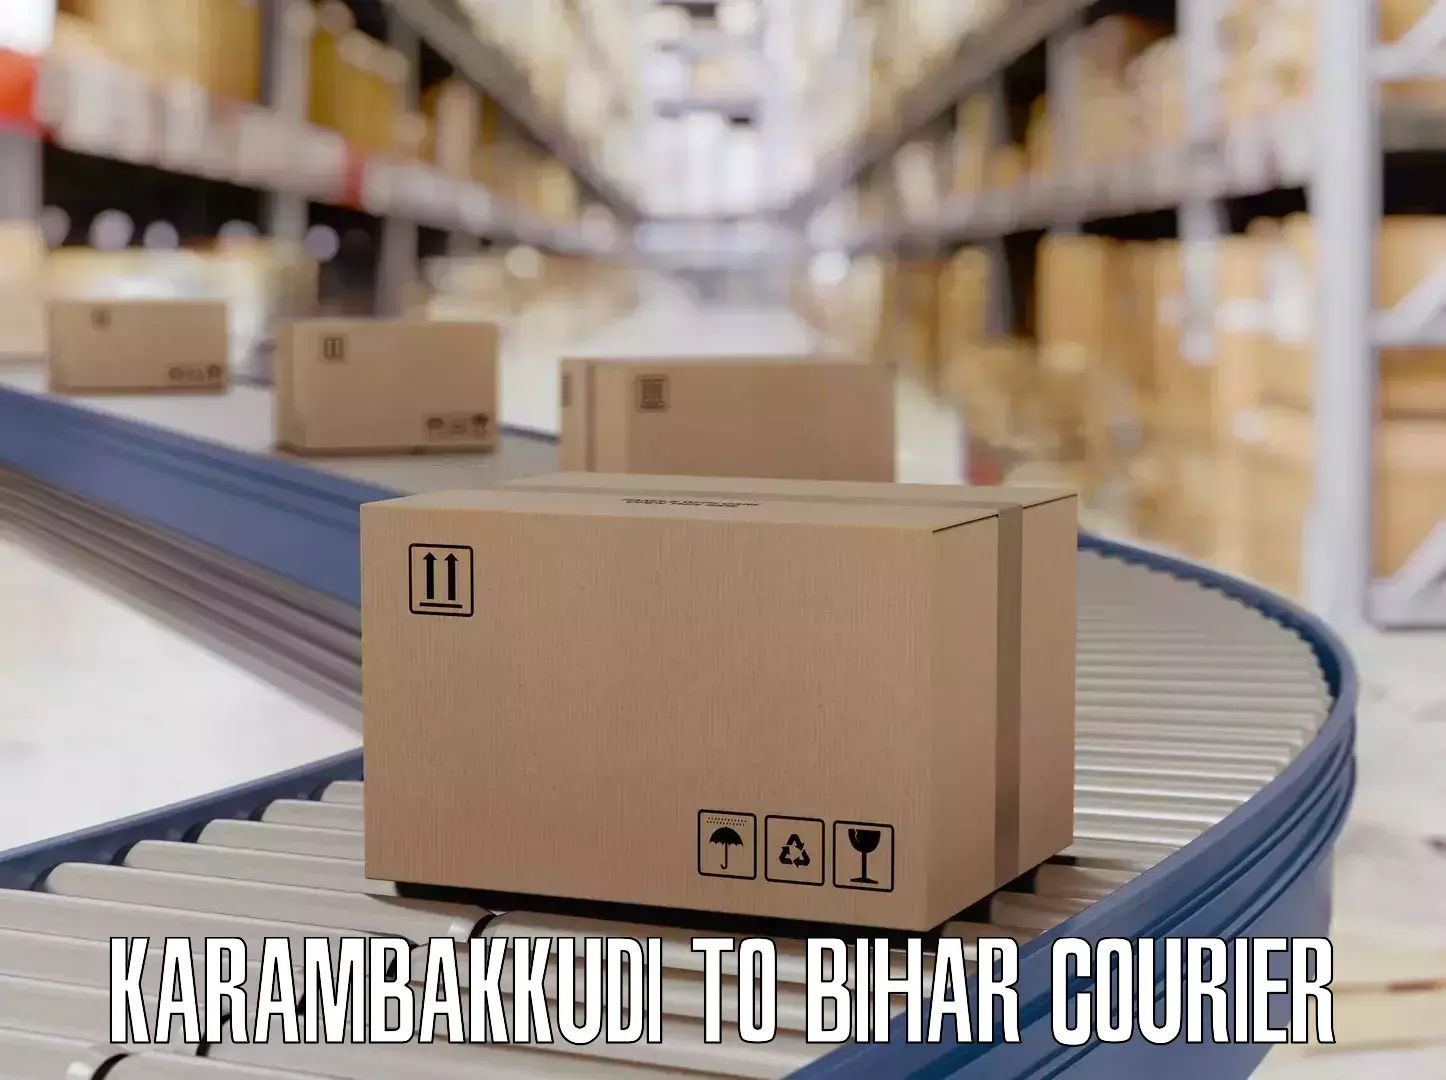 Baggage shipping service Karambakkudi to Brahmapur